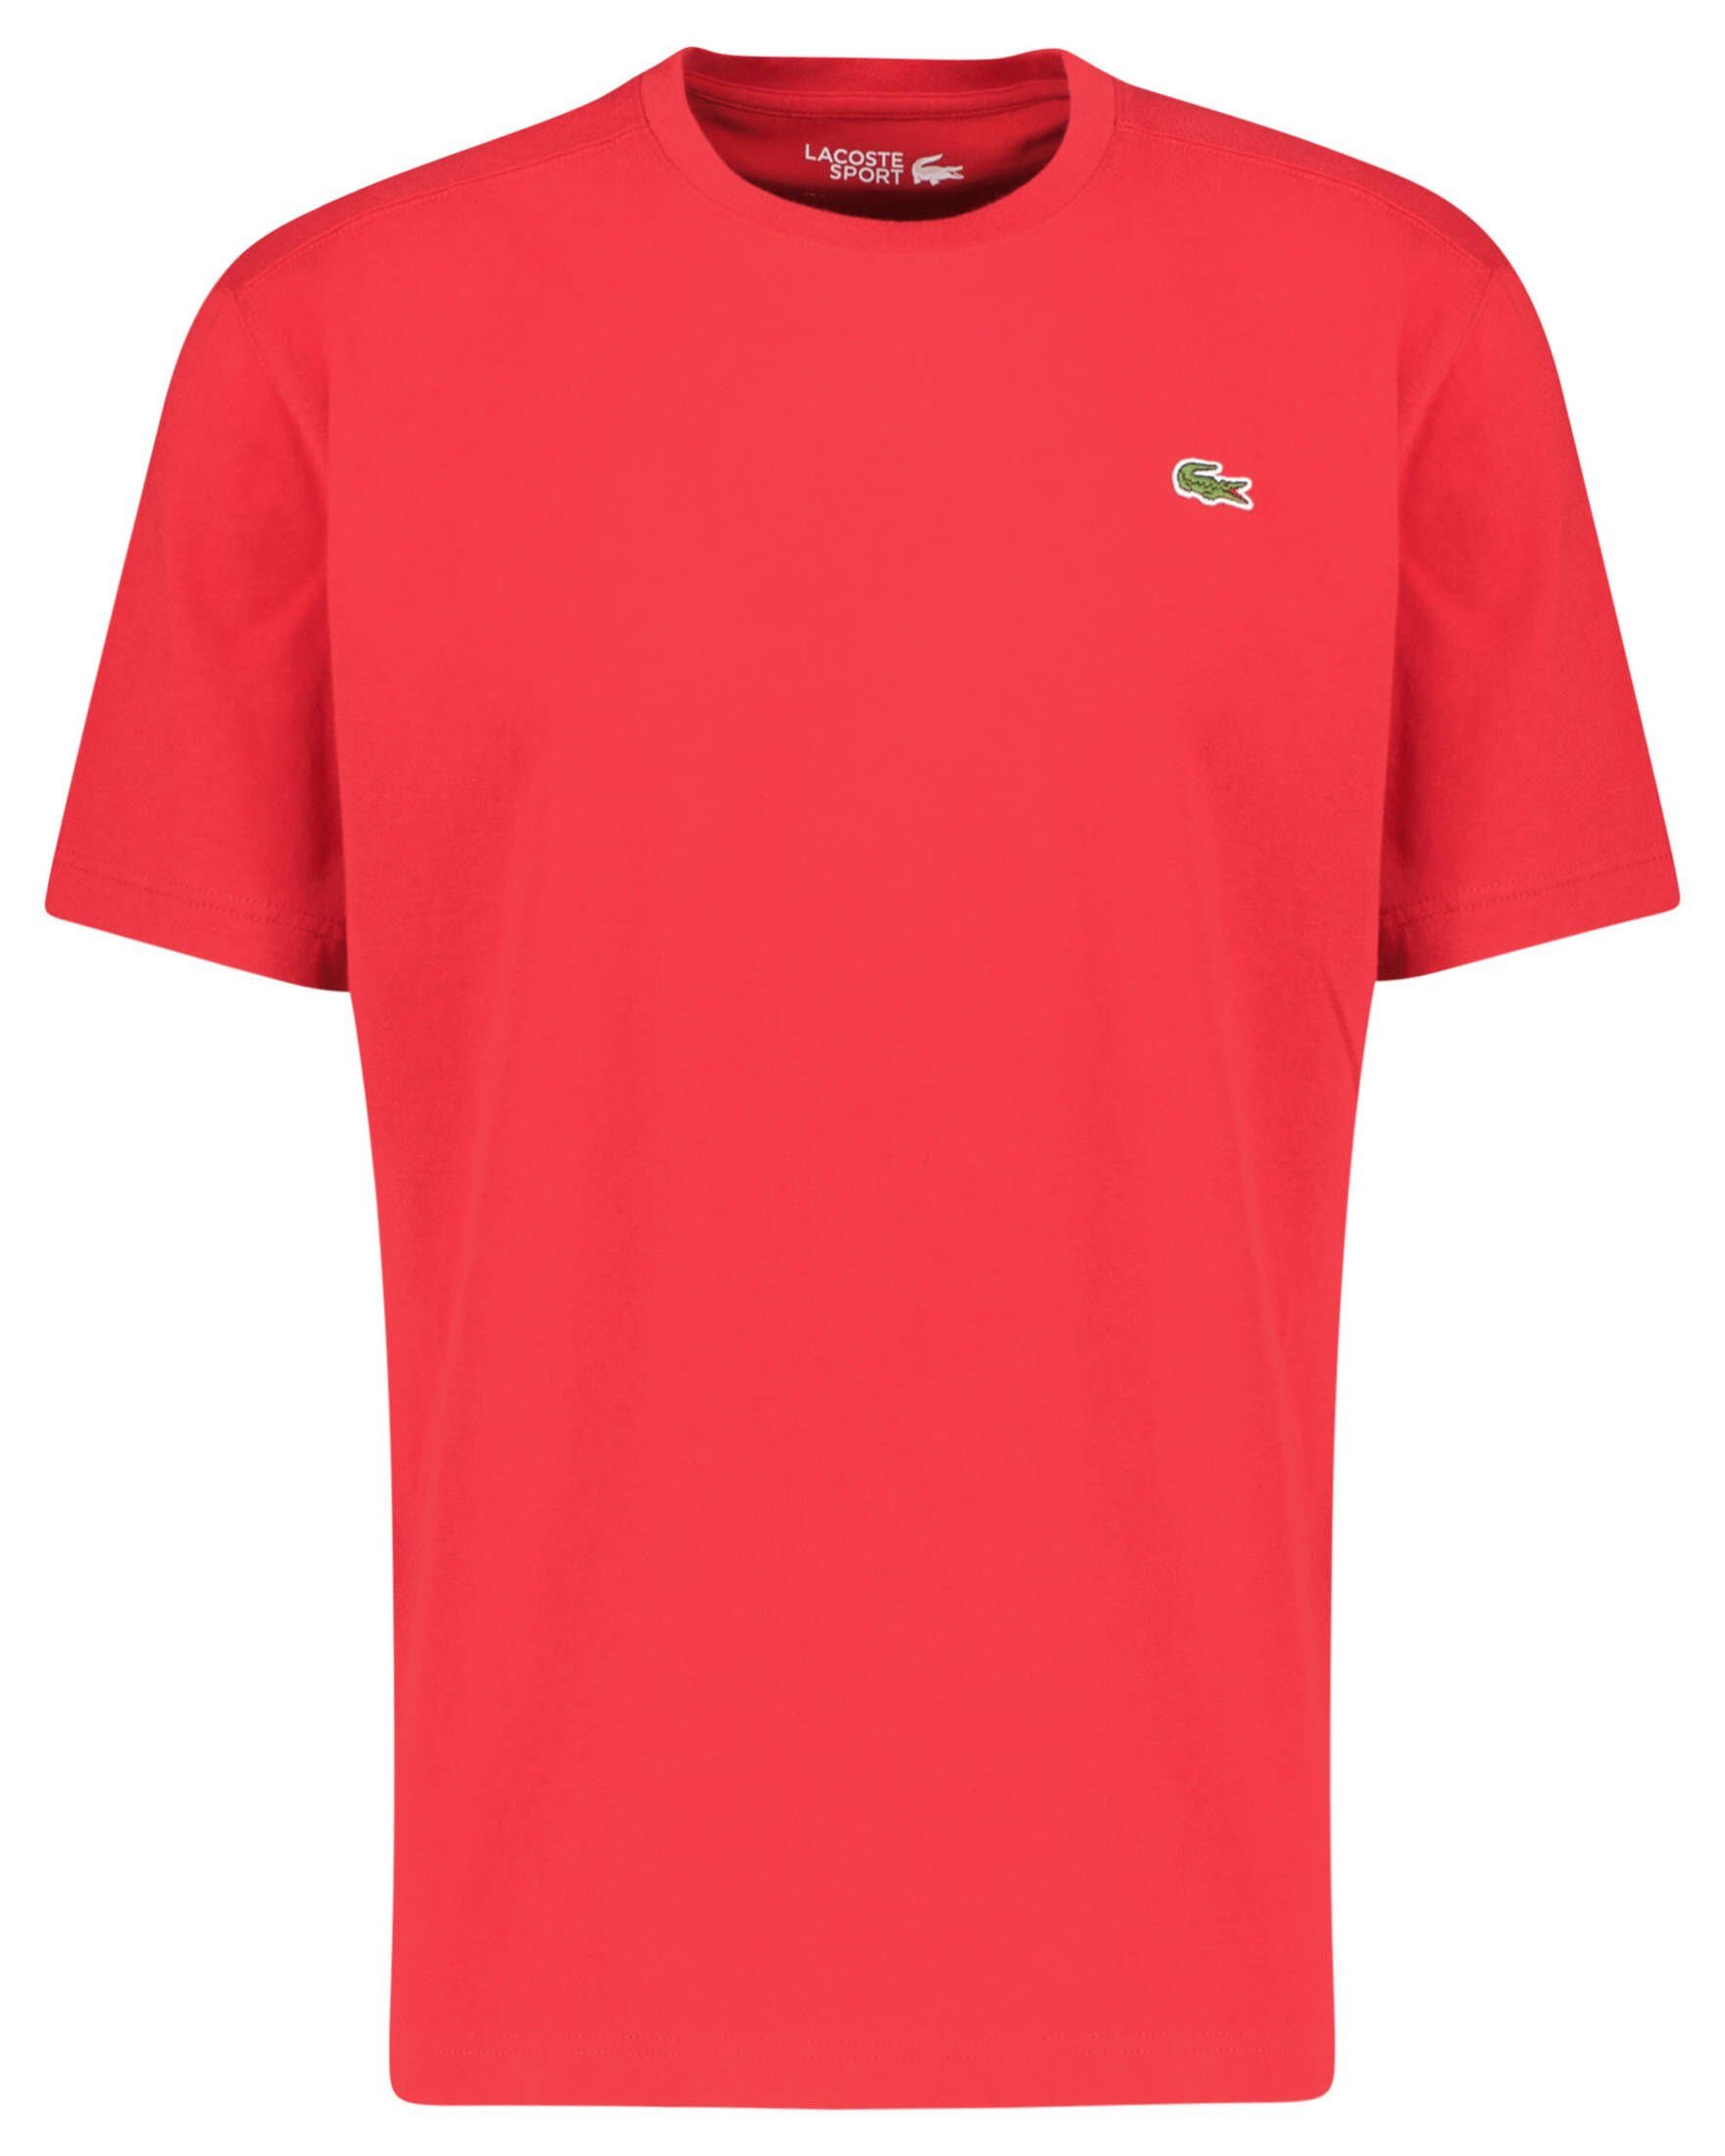 Tennisshirt Sport Lacoste (74) Herren rot TEE-SHIRT Tennisshirt